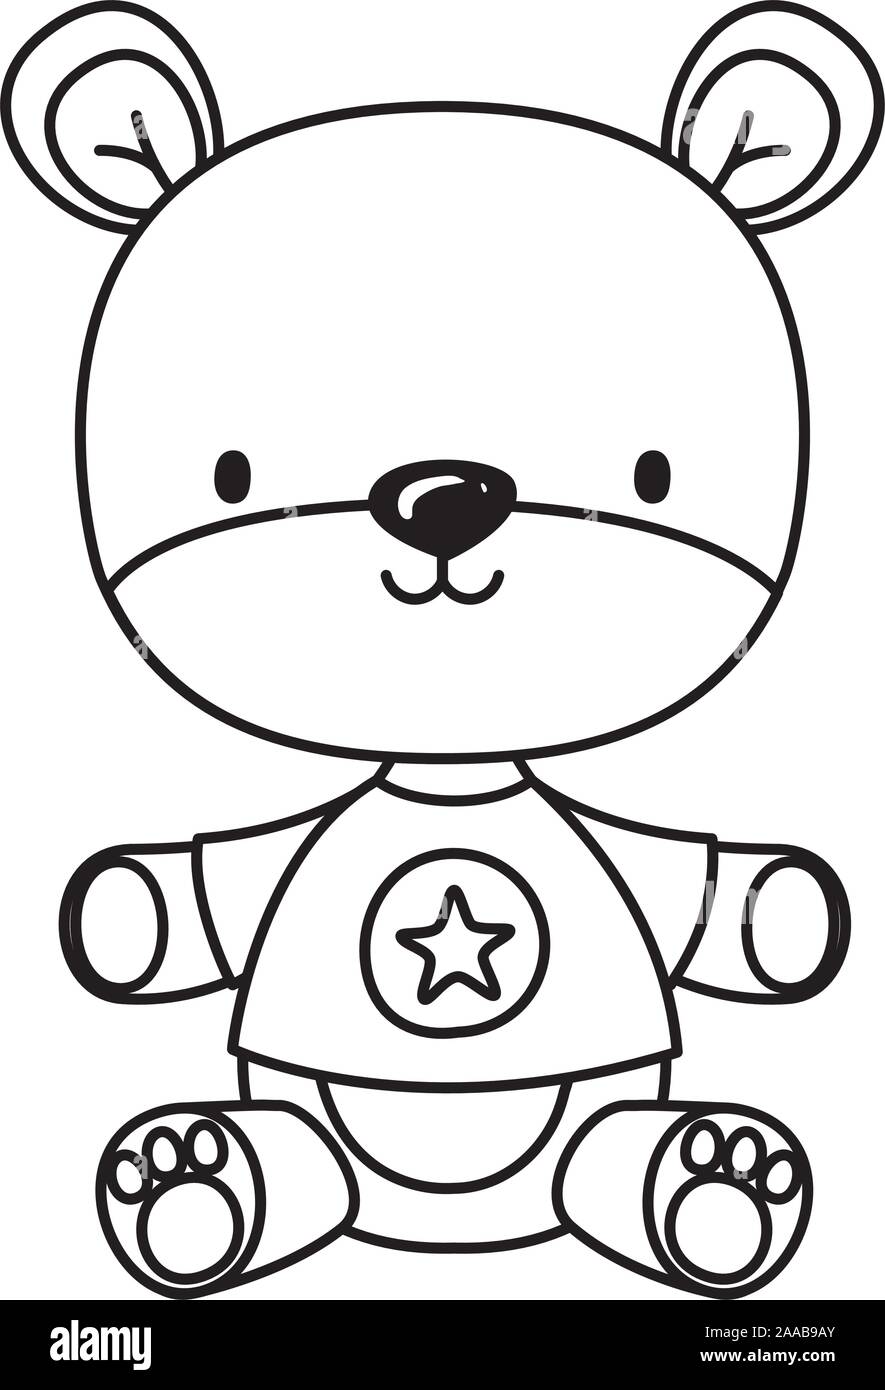 Isolated teddy bear toy vector design Stock Vector